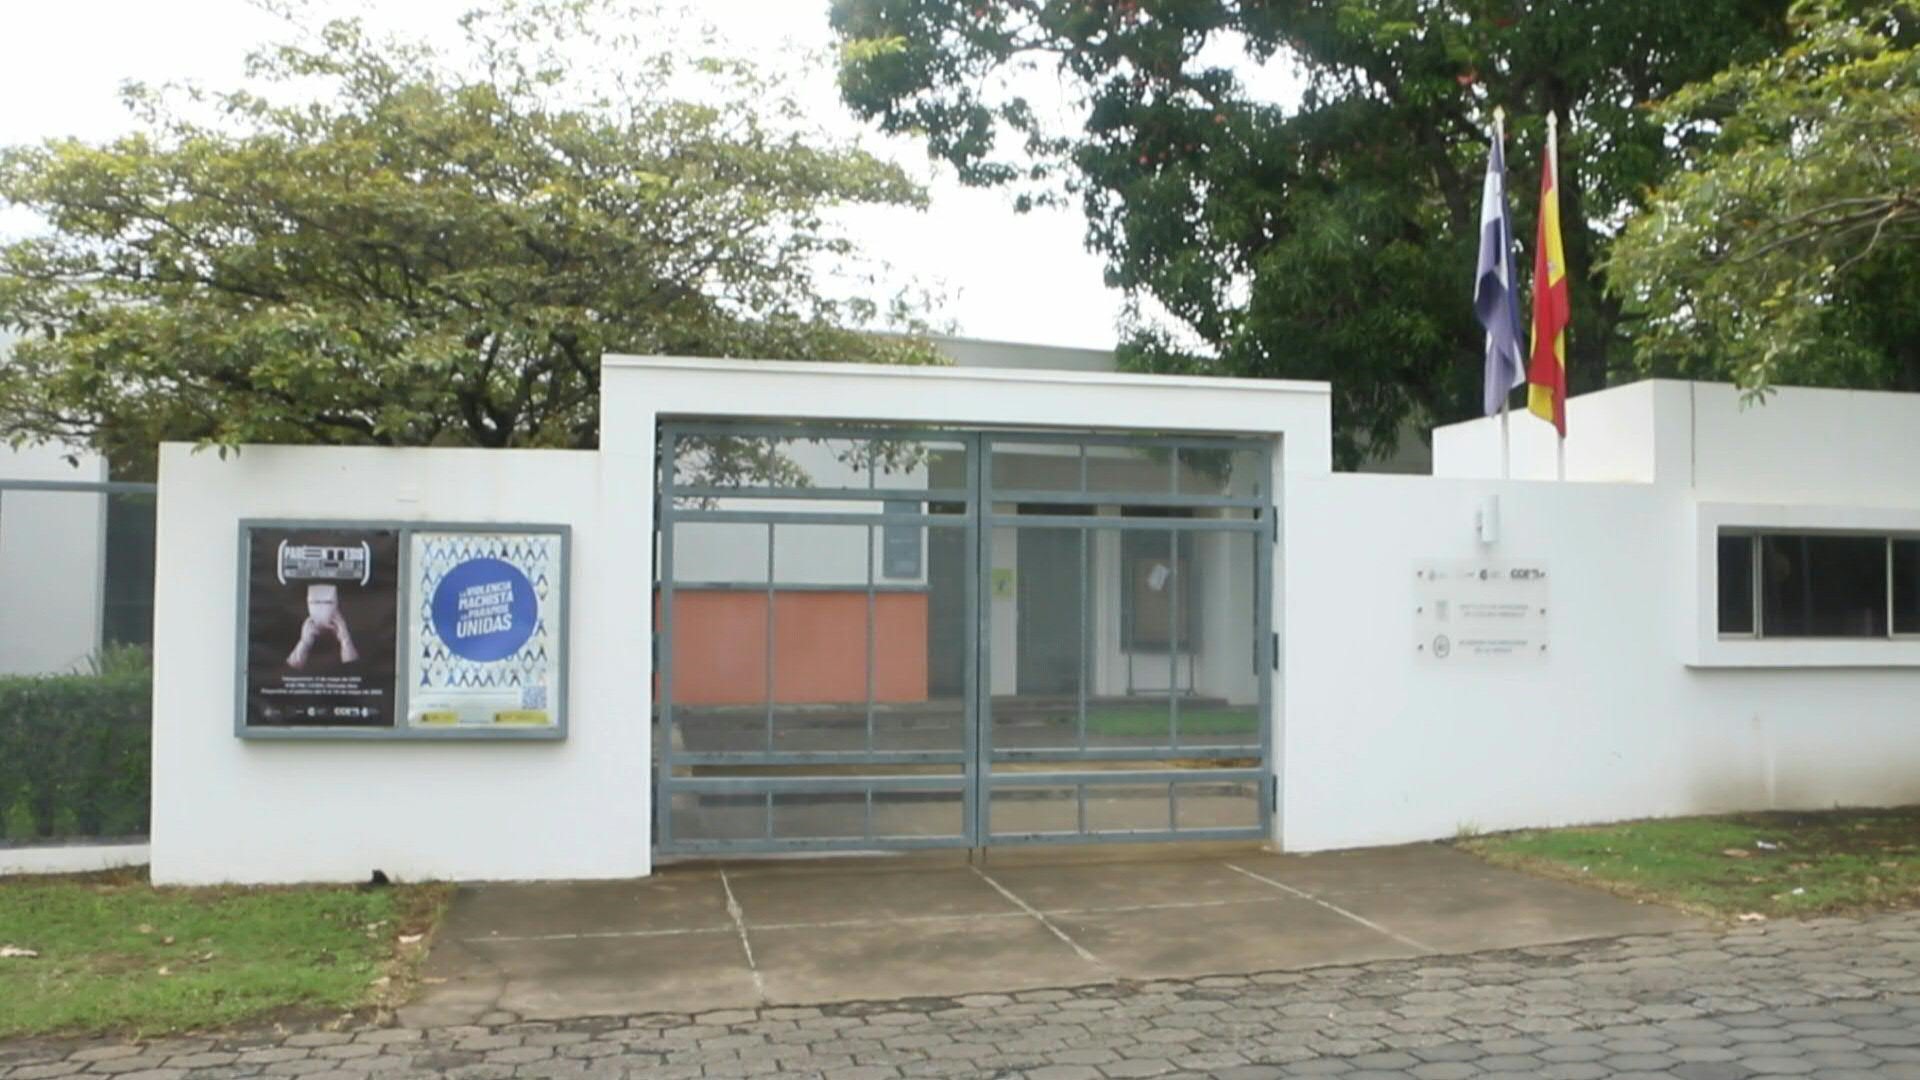 Academia Nicaragüense de la Lengua